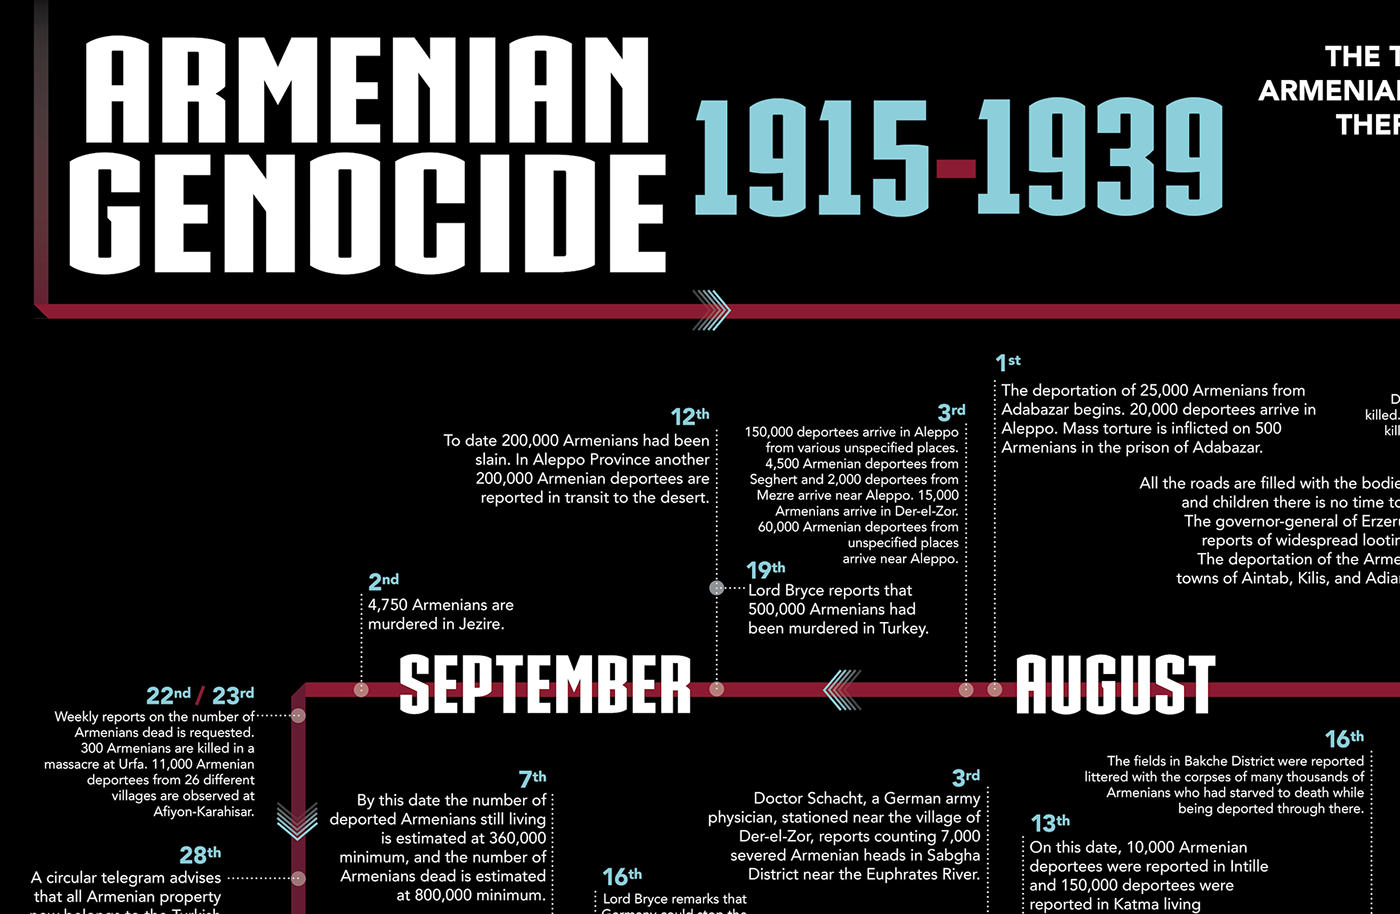 Armenian genocide timeline timeline design infographic skulls genocide Armenian